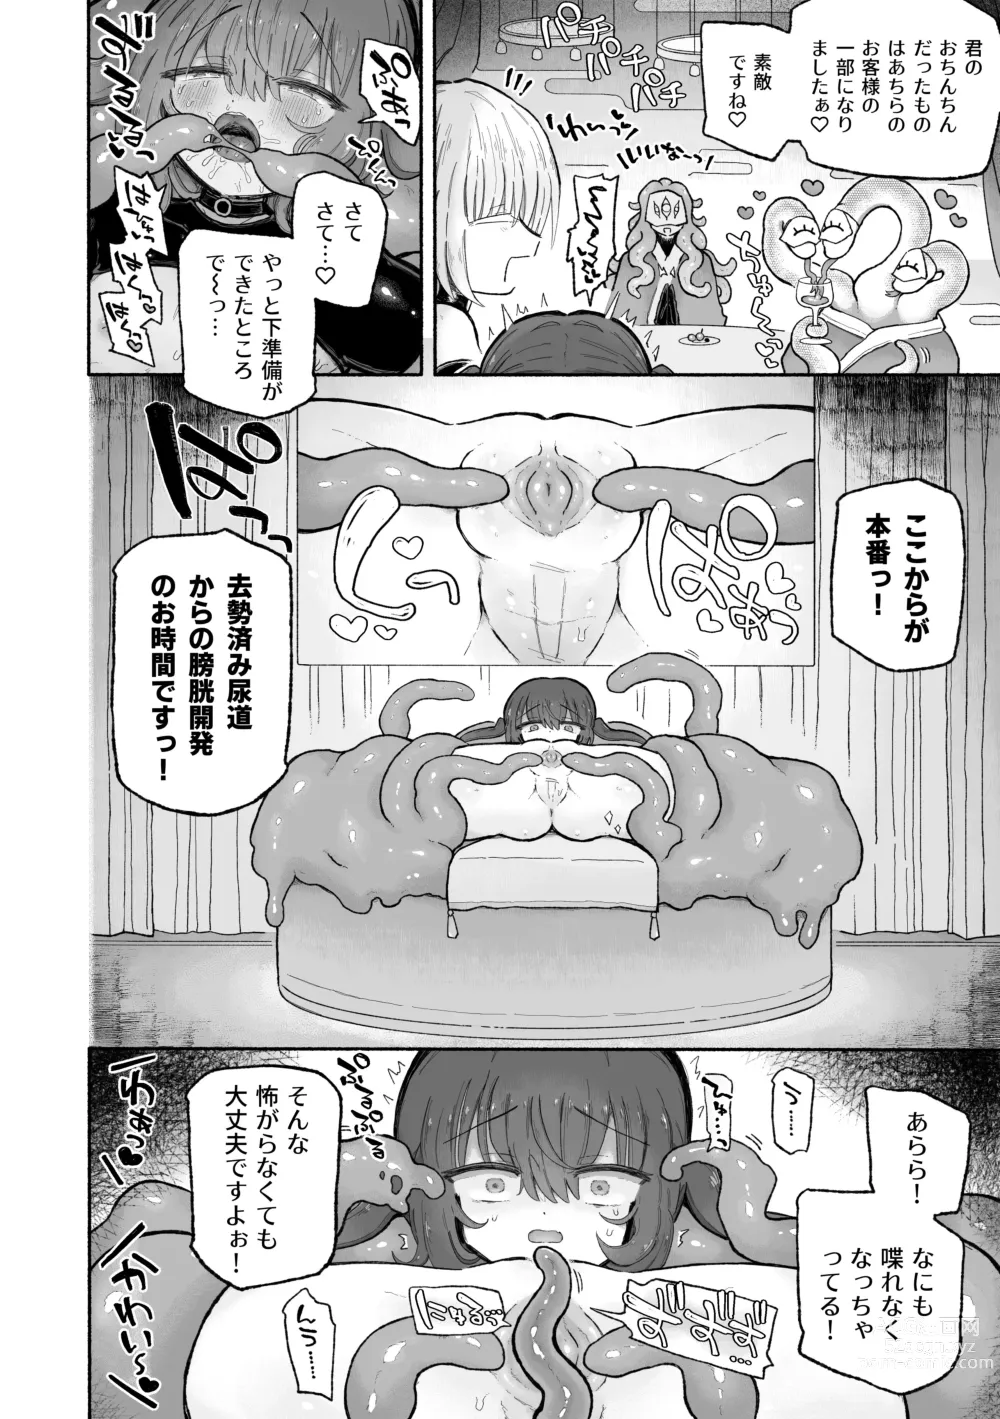 Page 36 of doujinshi Do hamari chui no kyosei danjon! 〜Mugen shasei no kairaku jigoku e yokoso〜